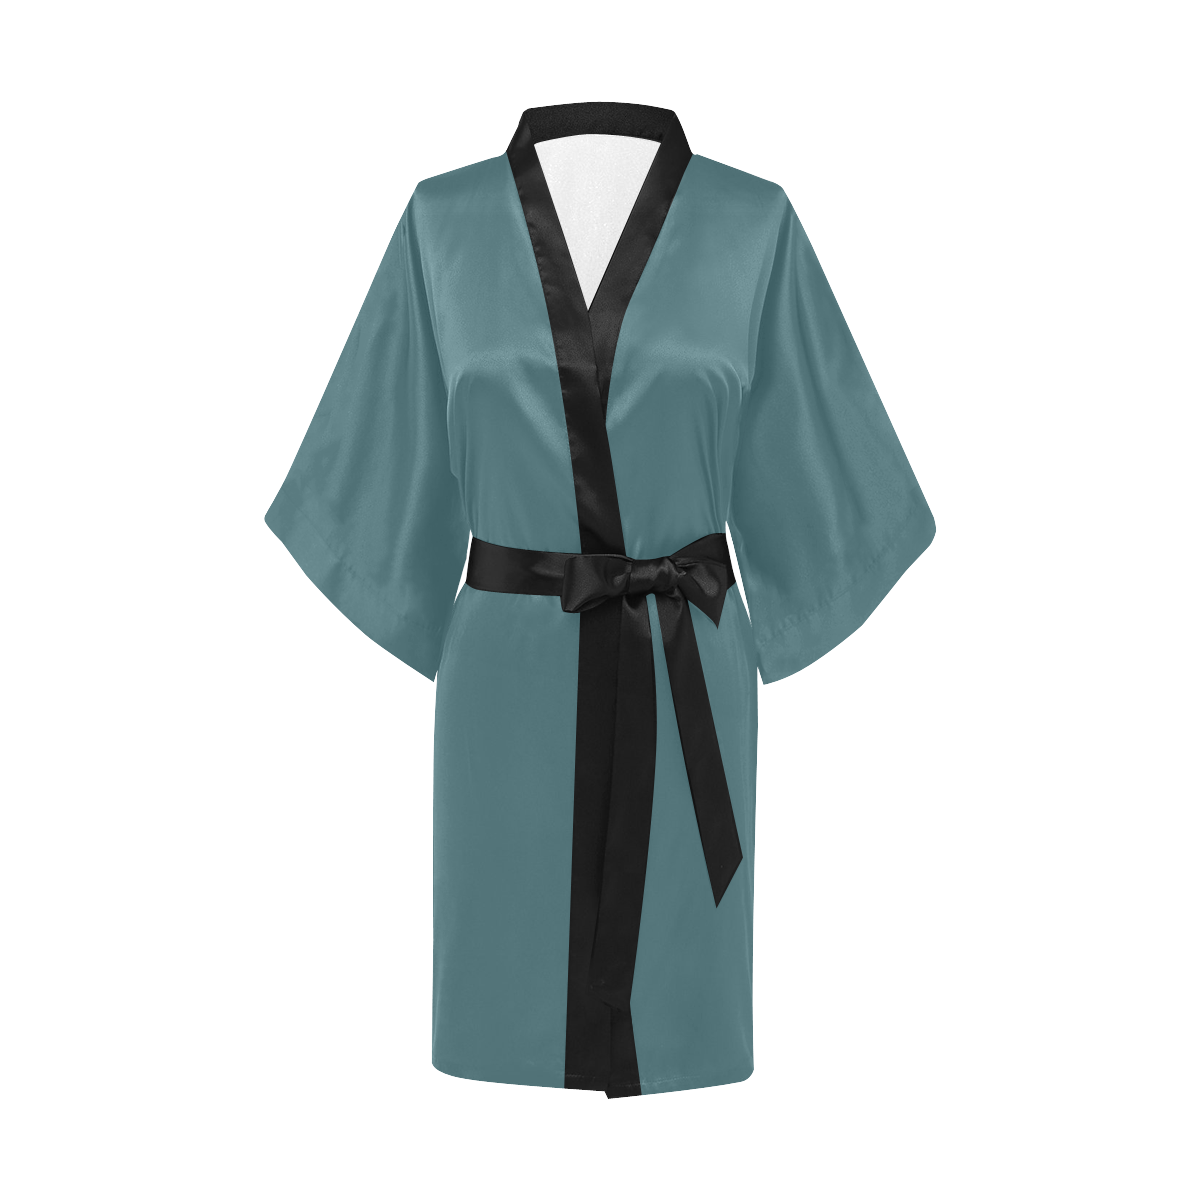 Hydro Kimono Robe